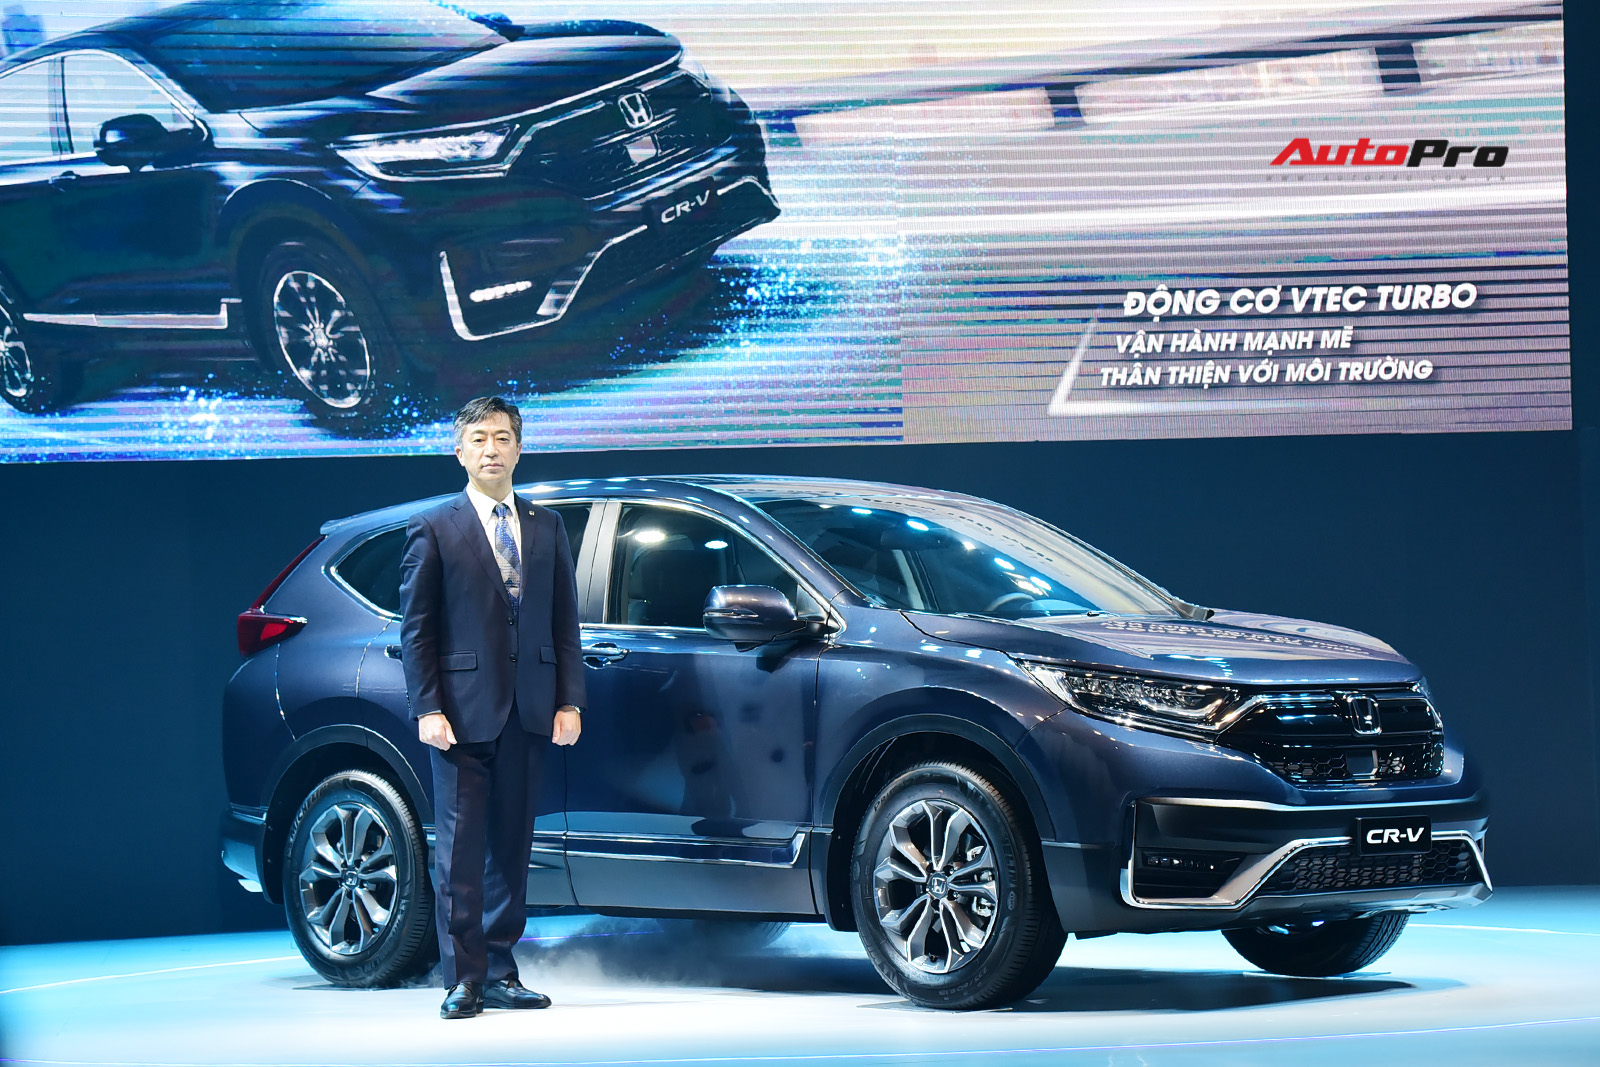 Honda CR-V 2020 lắp ráp giá từ 998 triệu đồng: Tiêu chuẩn hoá công nghệ an toàn khủng đấu Mazda CX-5 - Ảnh 1.